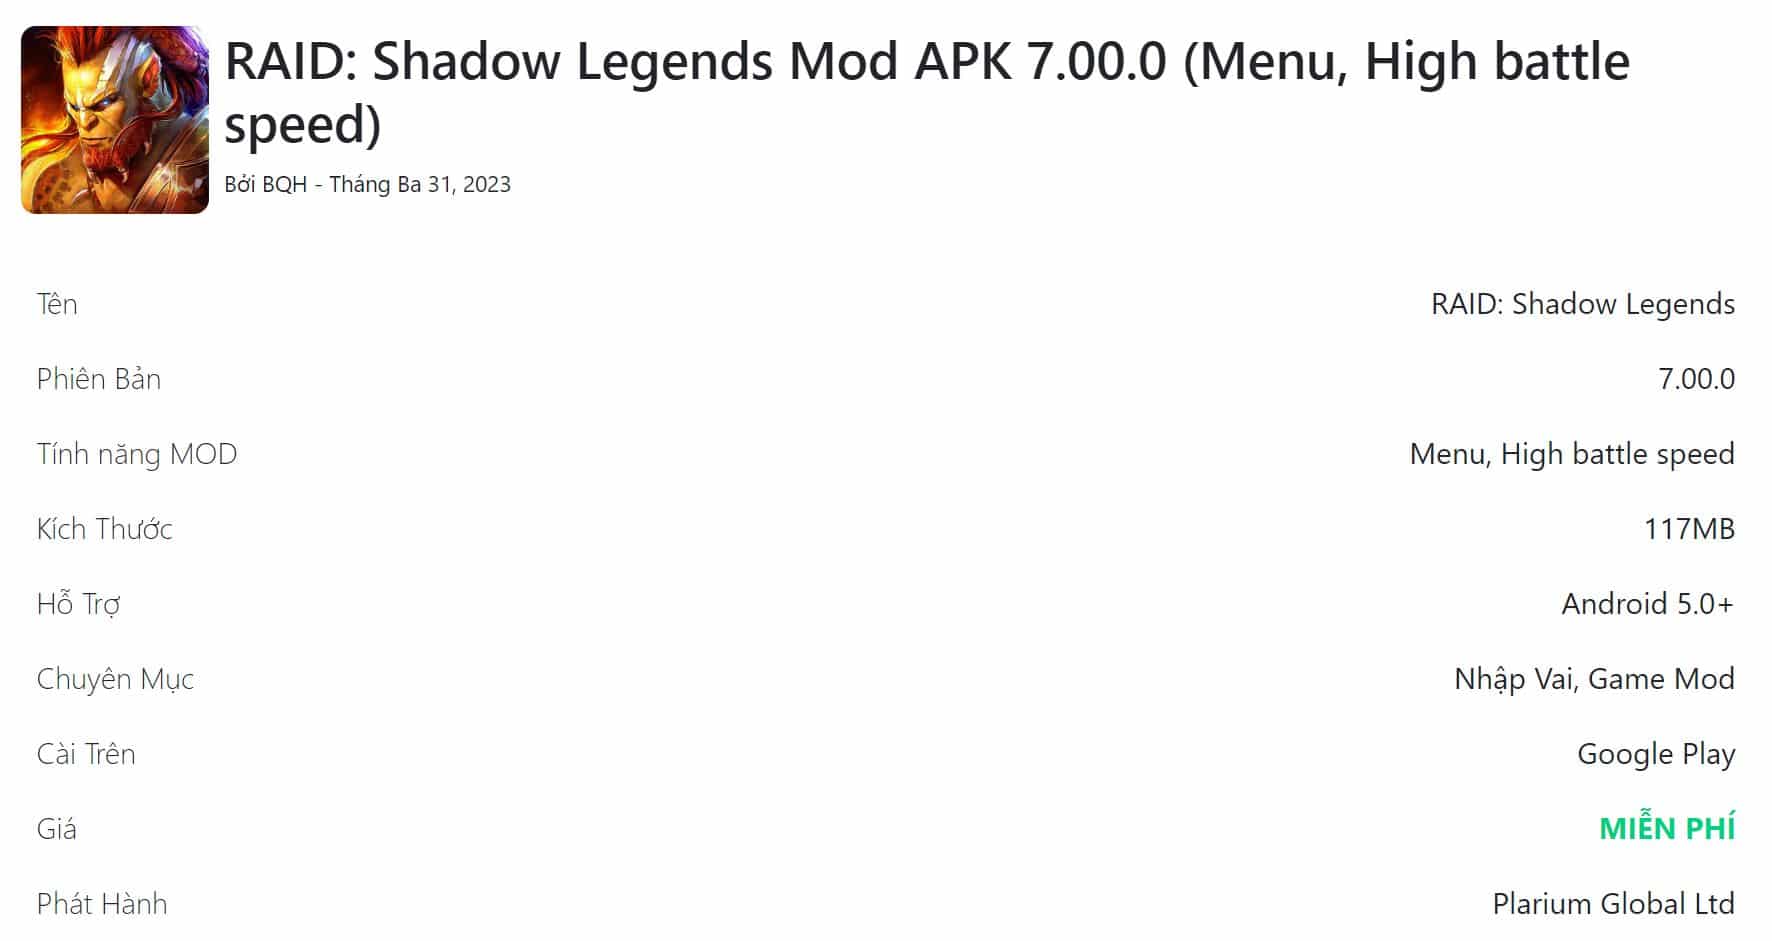 RAID Shadow Legends Mod APK 7.00.0